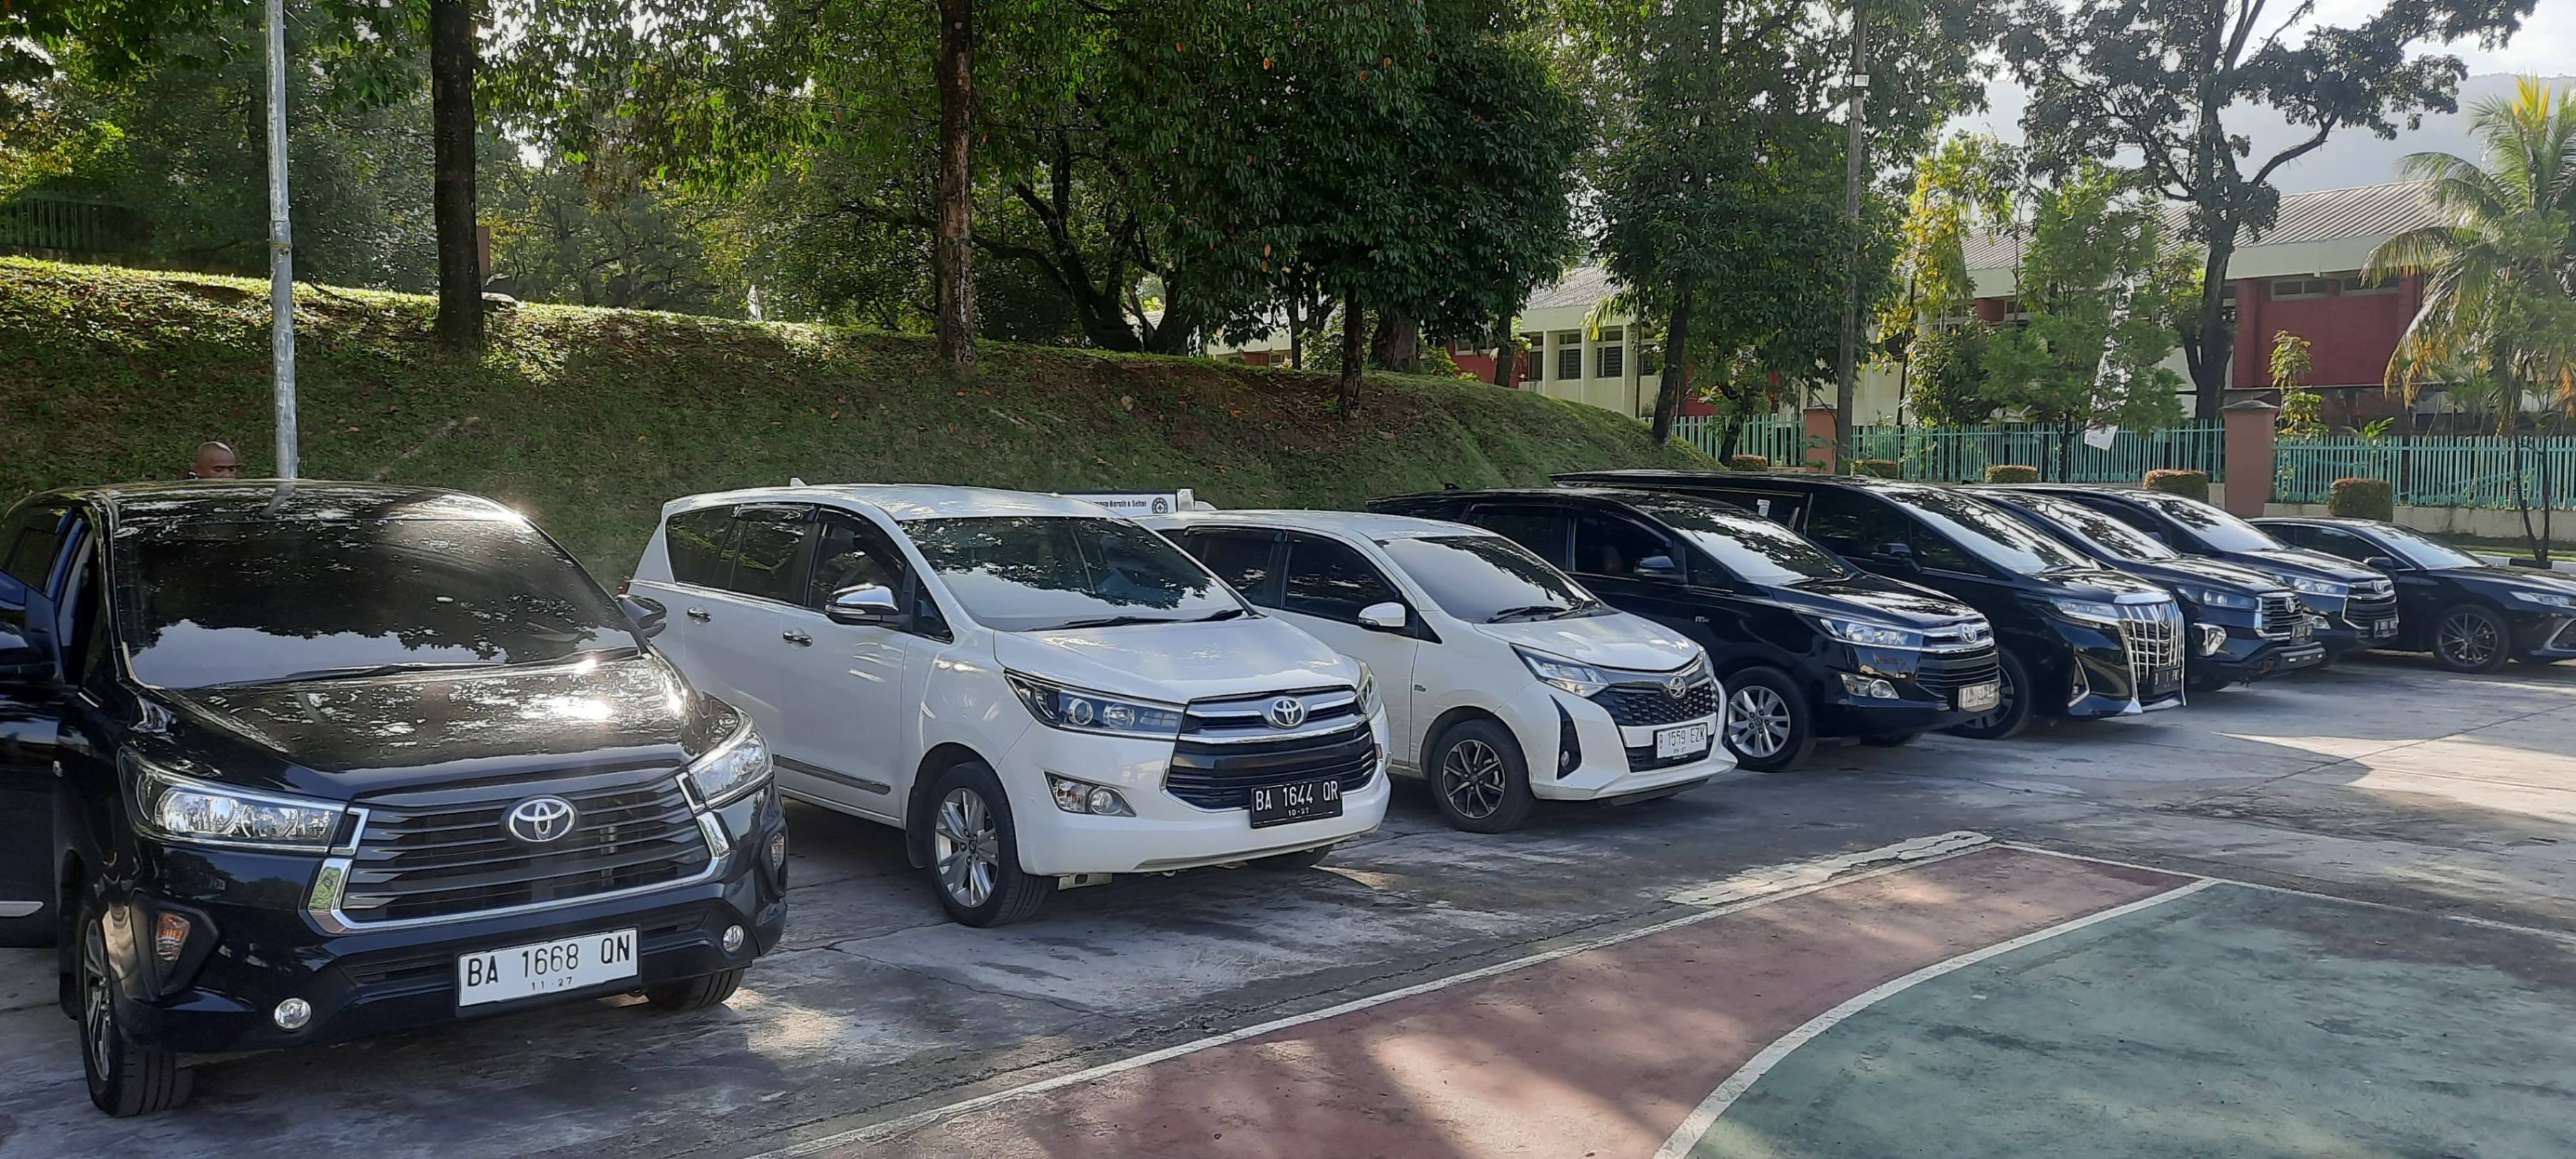 Harga Rental Mobil  Di Semarang Terbaik